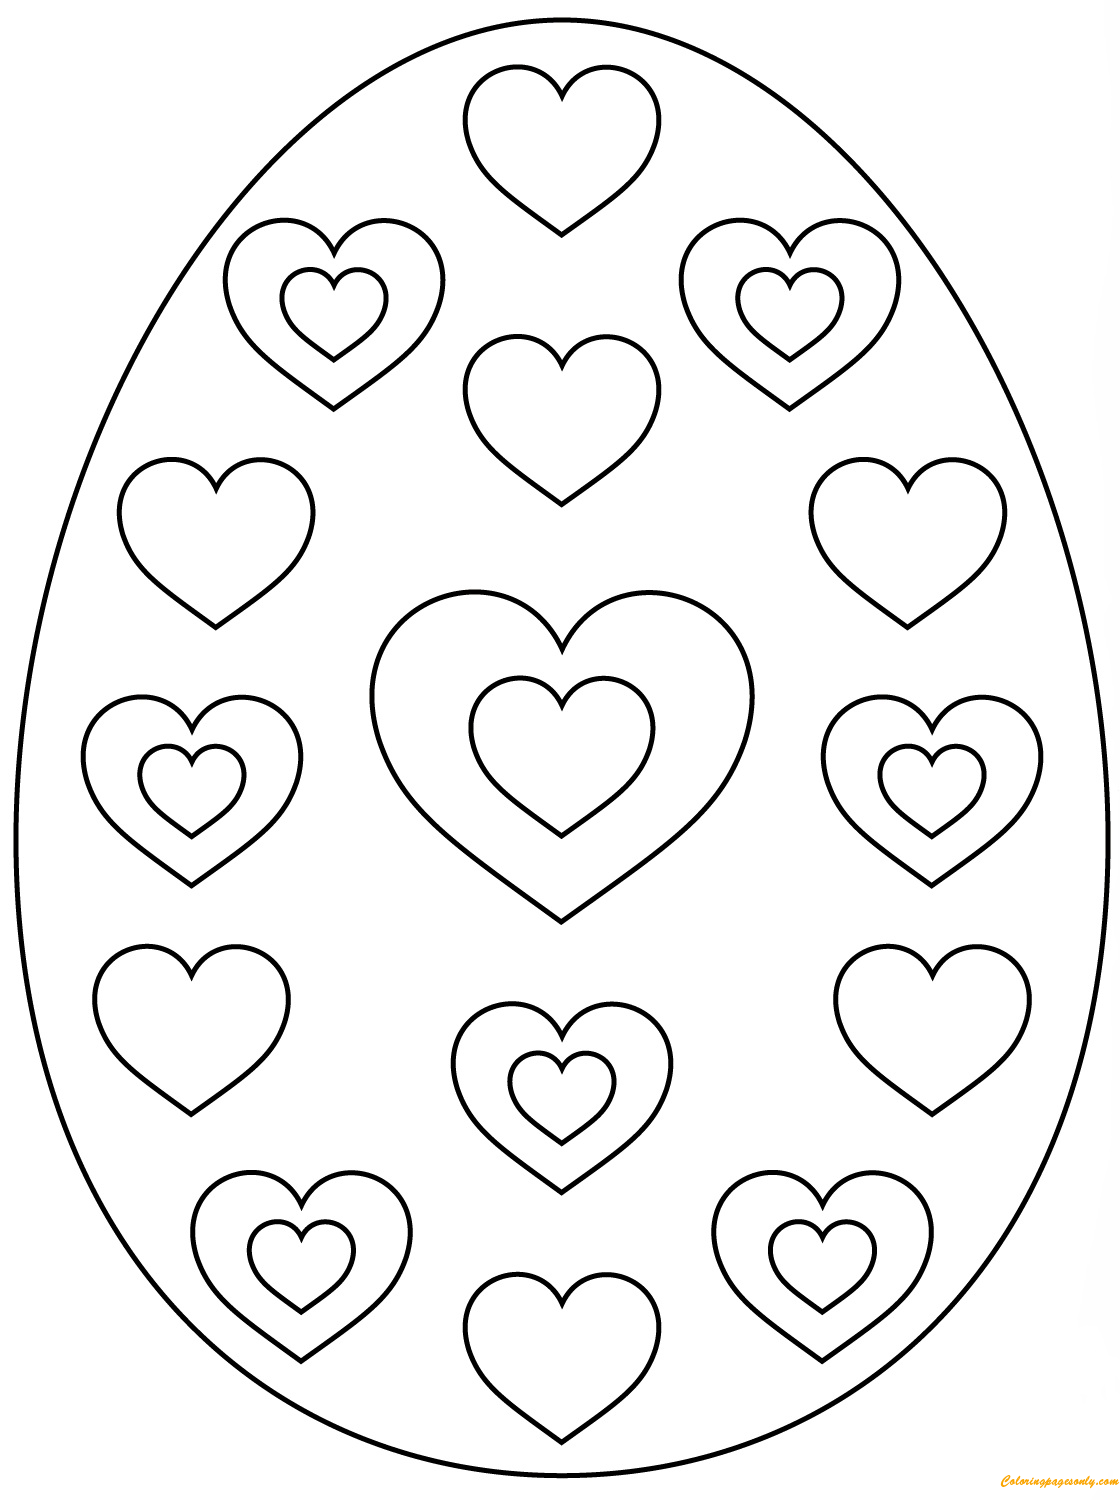 Узор сердечек из пасхальных яиц